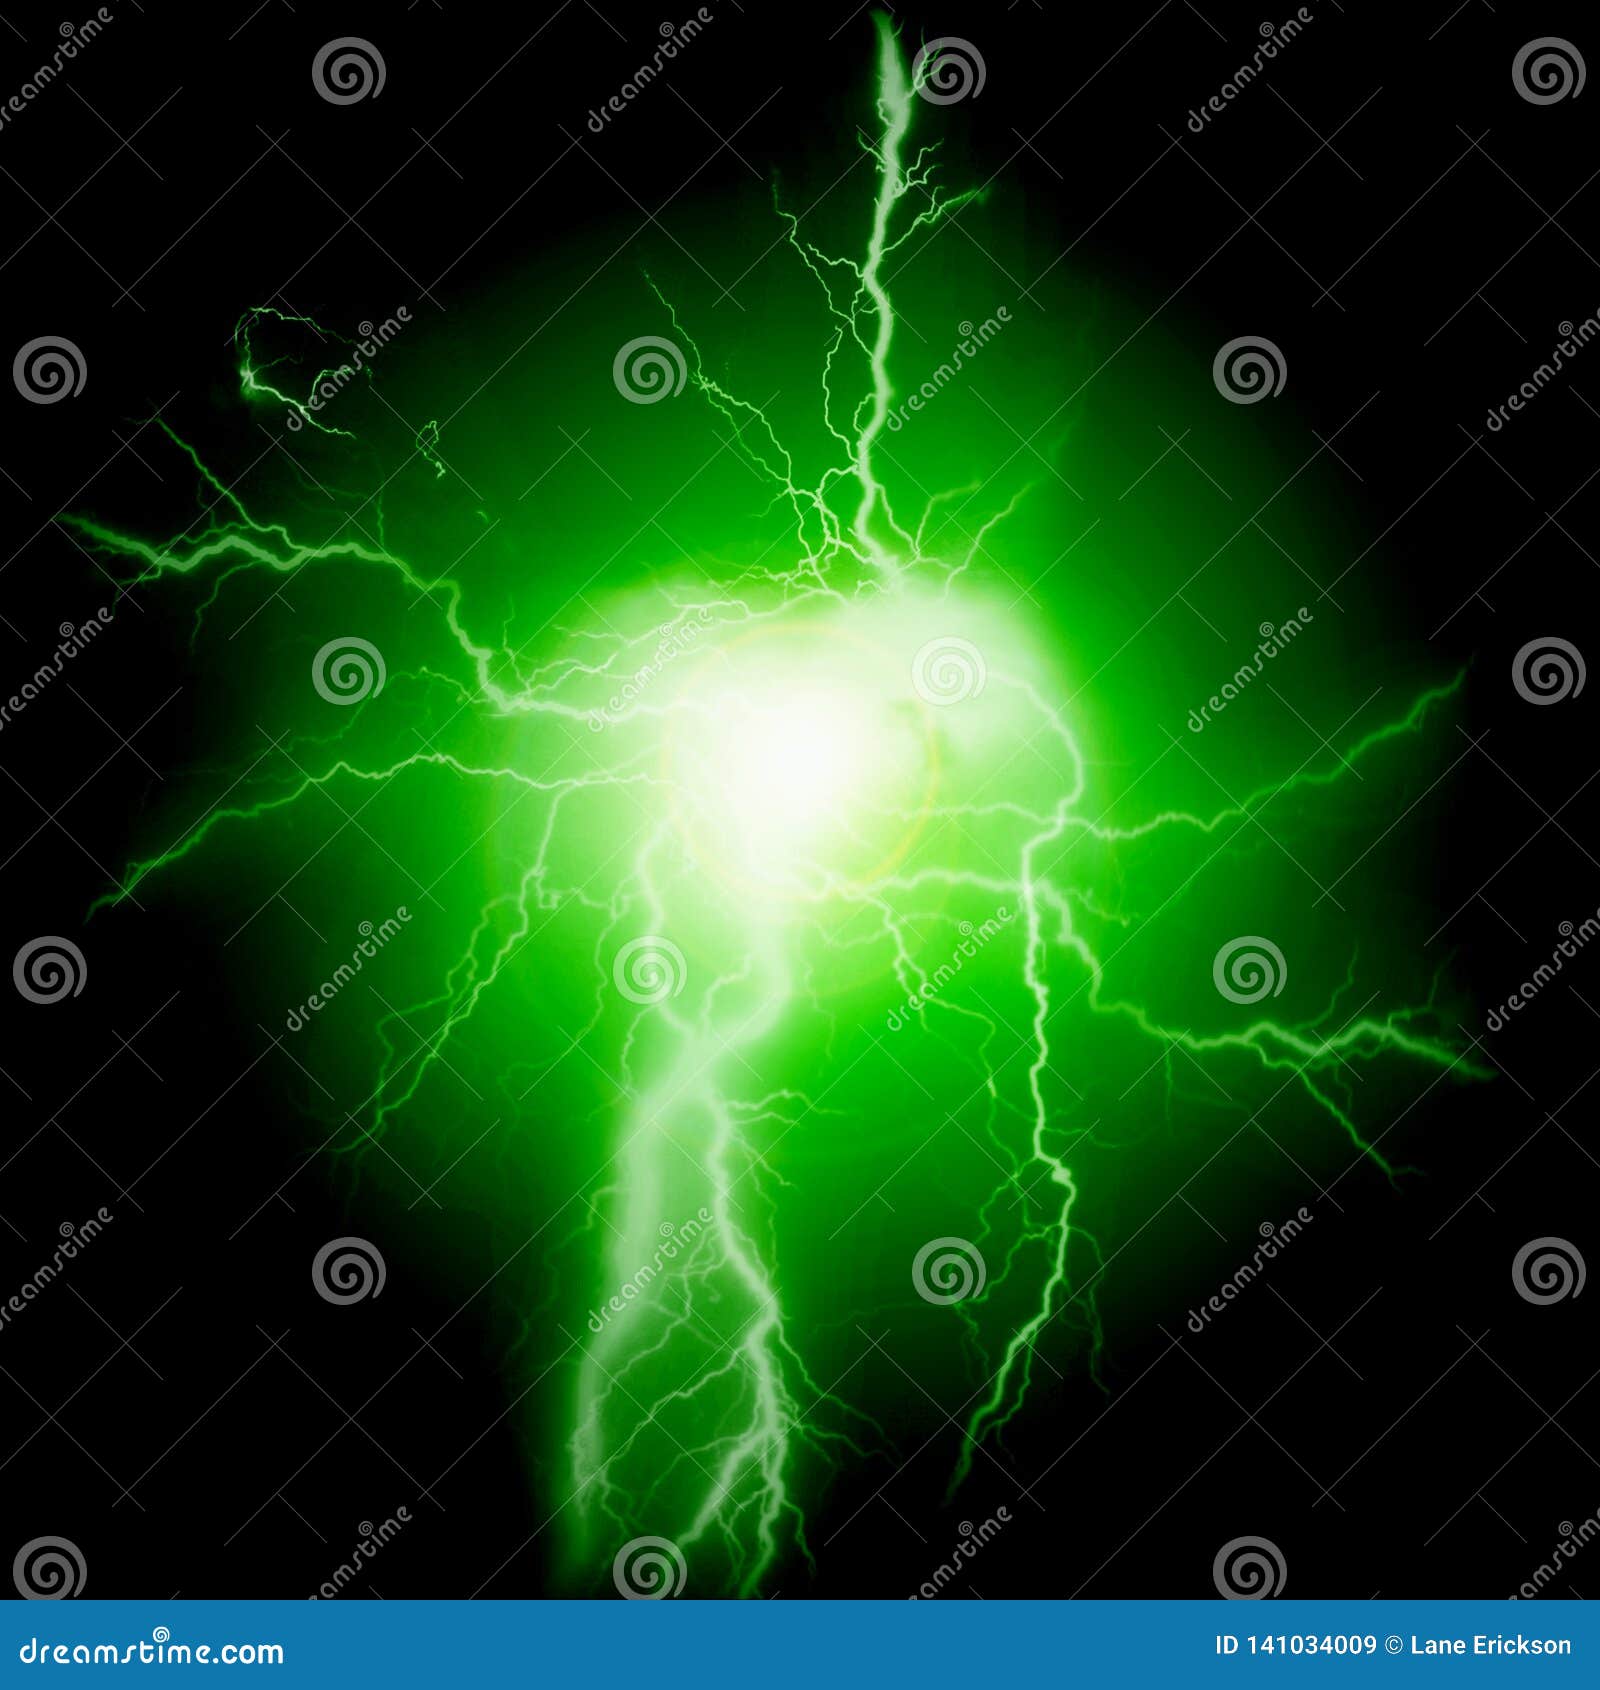 Green Lightning Wallpaper Images  Free Download on Freepik